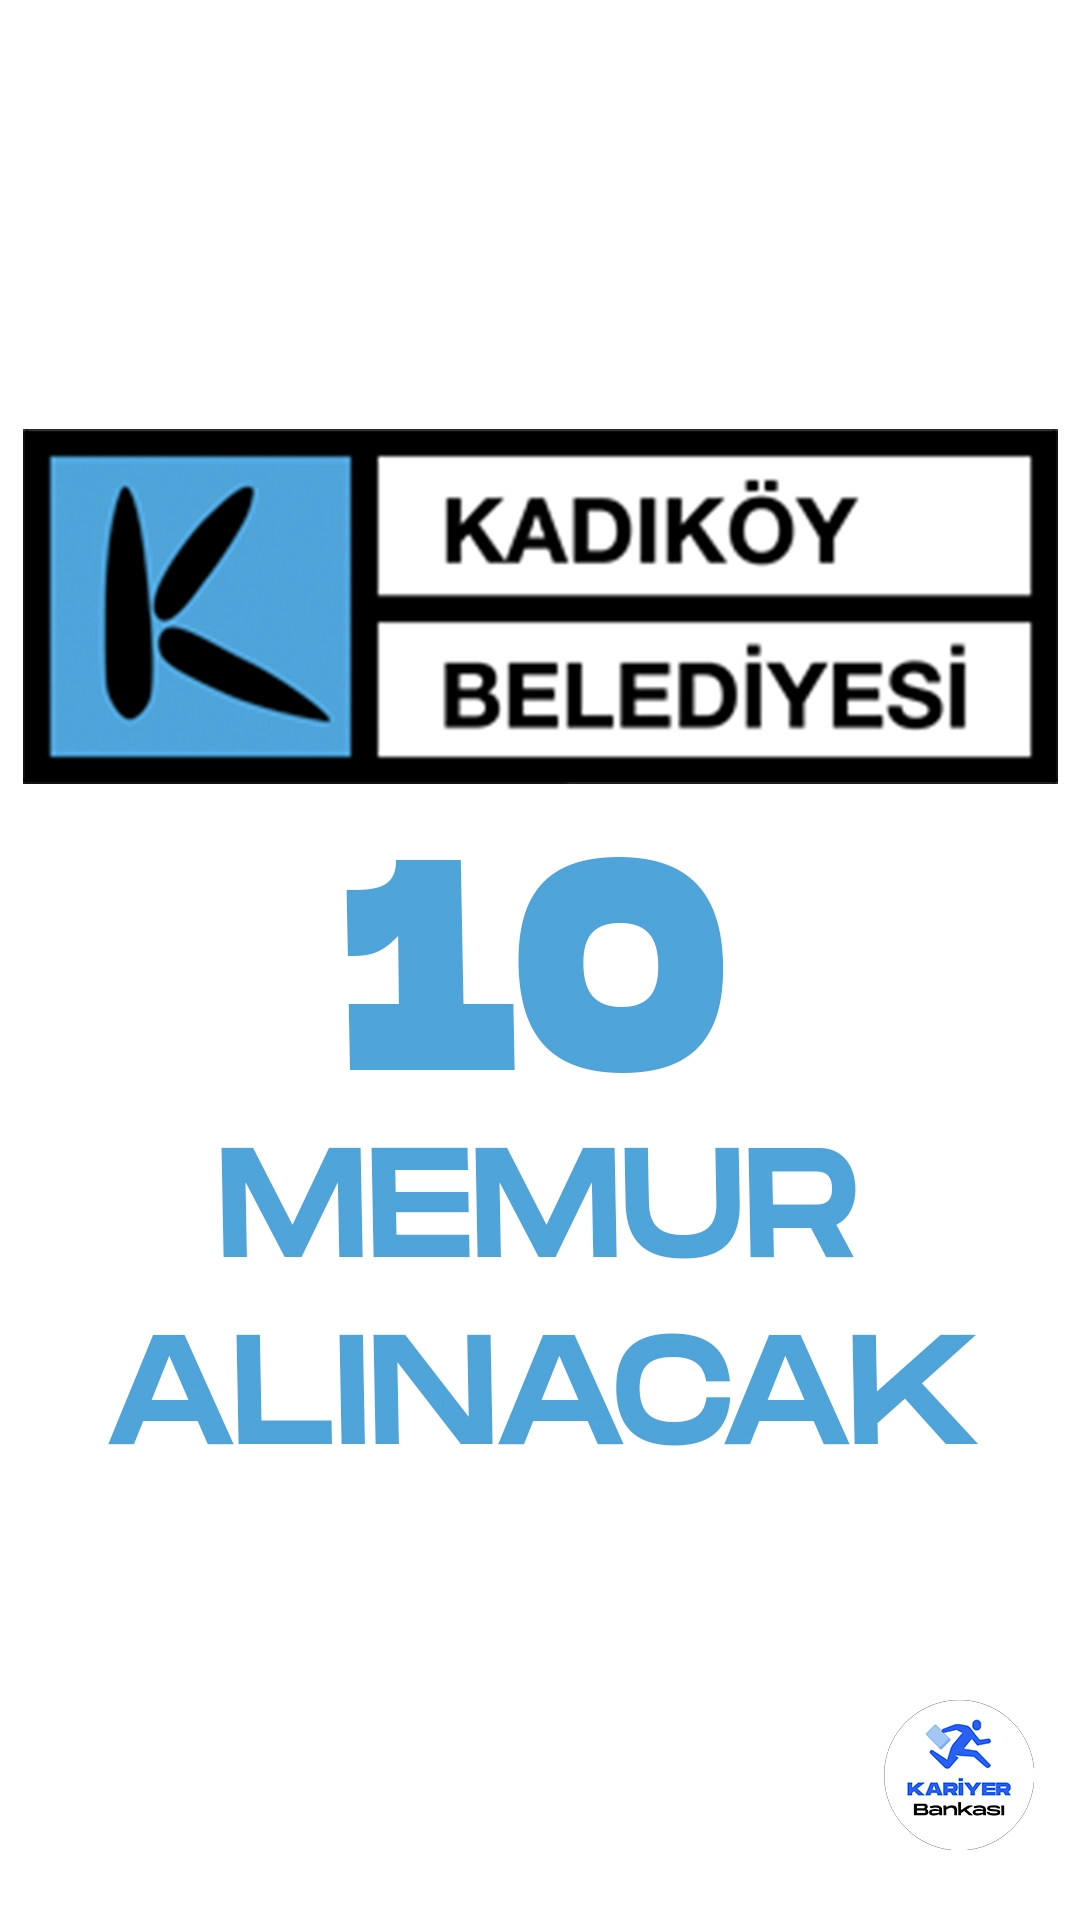 Kadıköy Belediyesi 10 Memur Alımı Yapacak. İlgili alım duyurusunda, Kadıköy Belediyesine kadın erkek adaylardan olmak üzere, KPSS en az 70 puanla zabıta memuru alımı yapılacağı aktarıldı. Başvurular 4 Aralık 2023 tarihinde alınacak. Başvuru yapacak adayların şartları sağlaması gerekmektedir.